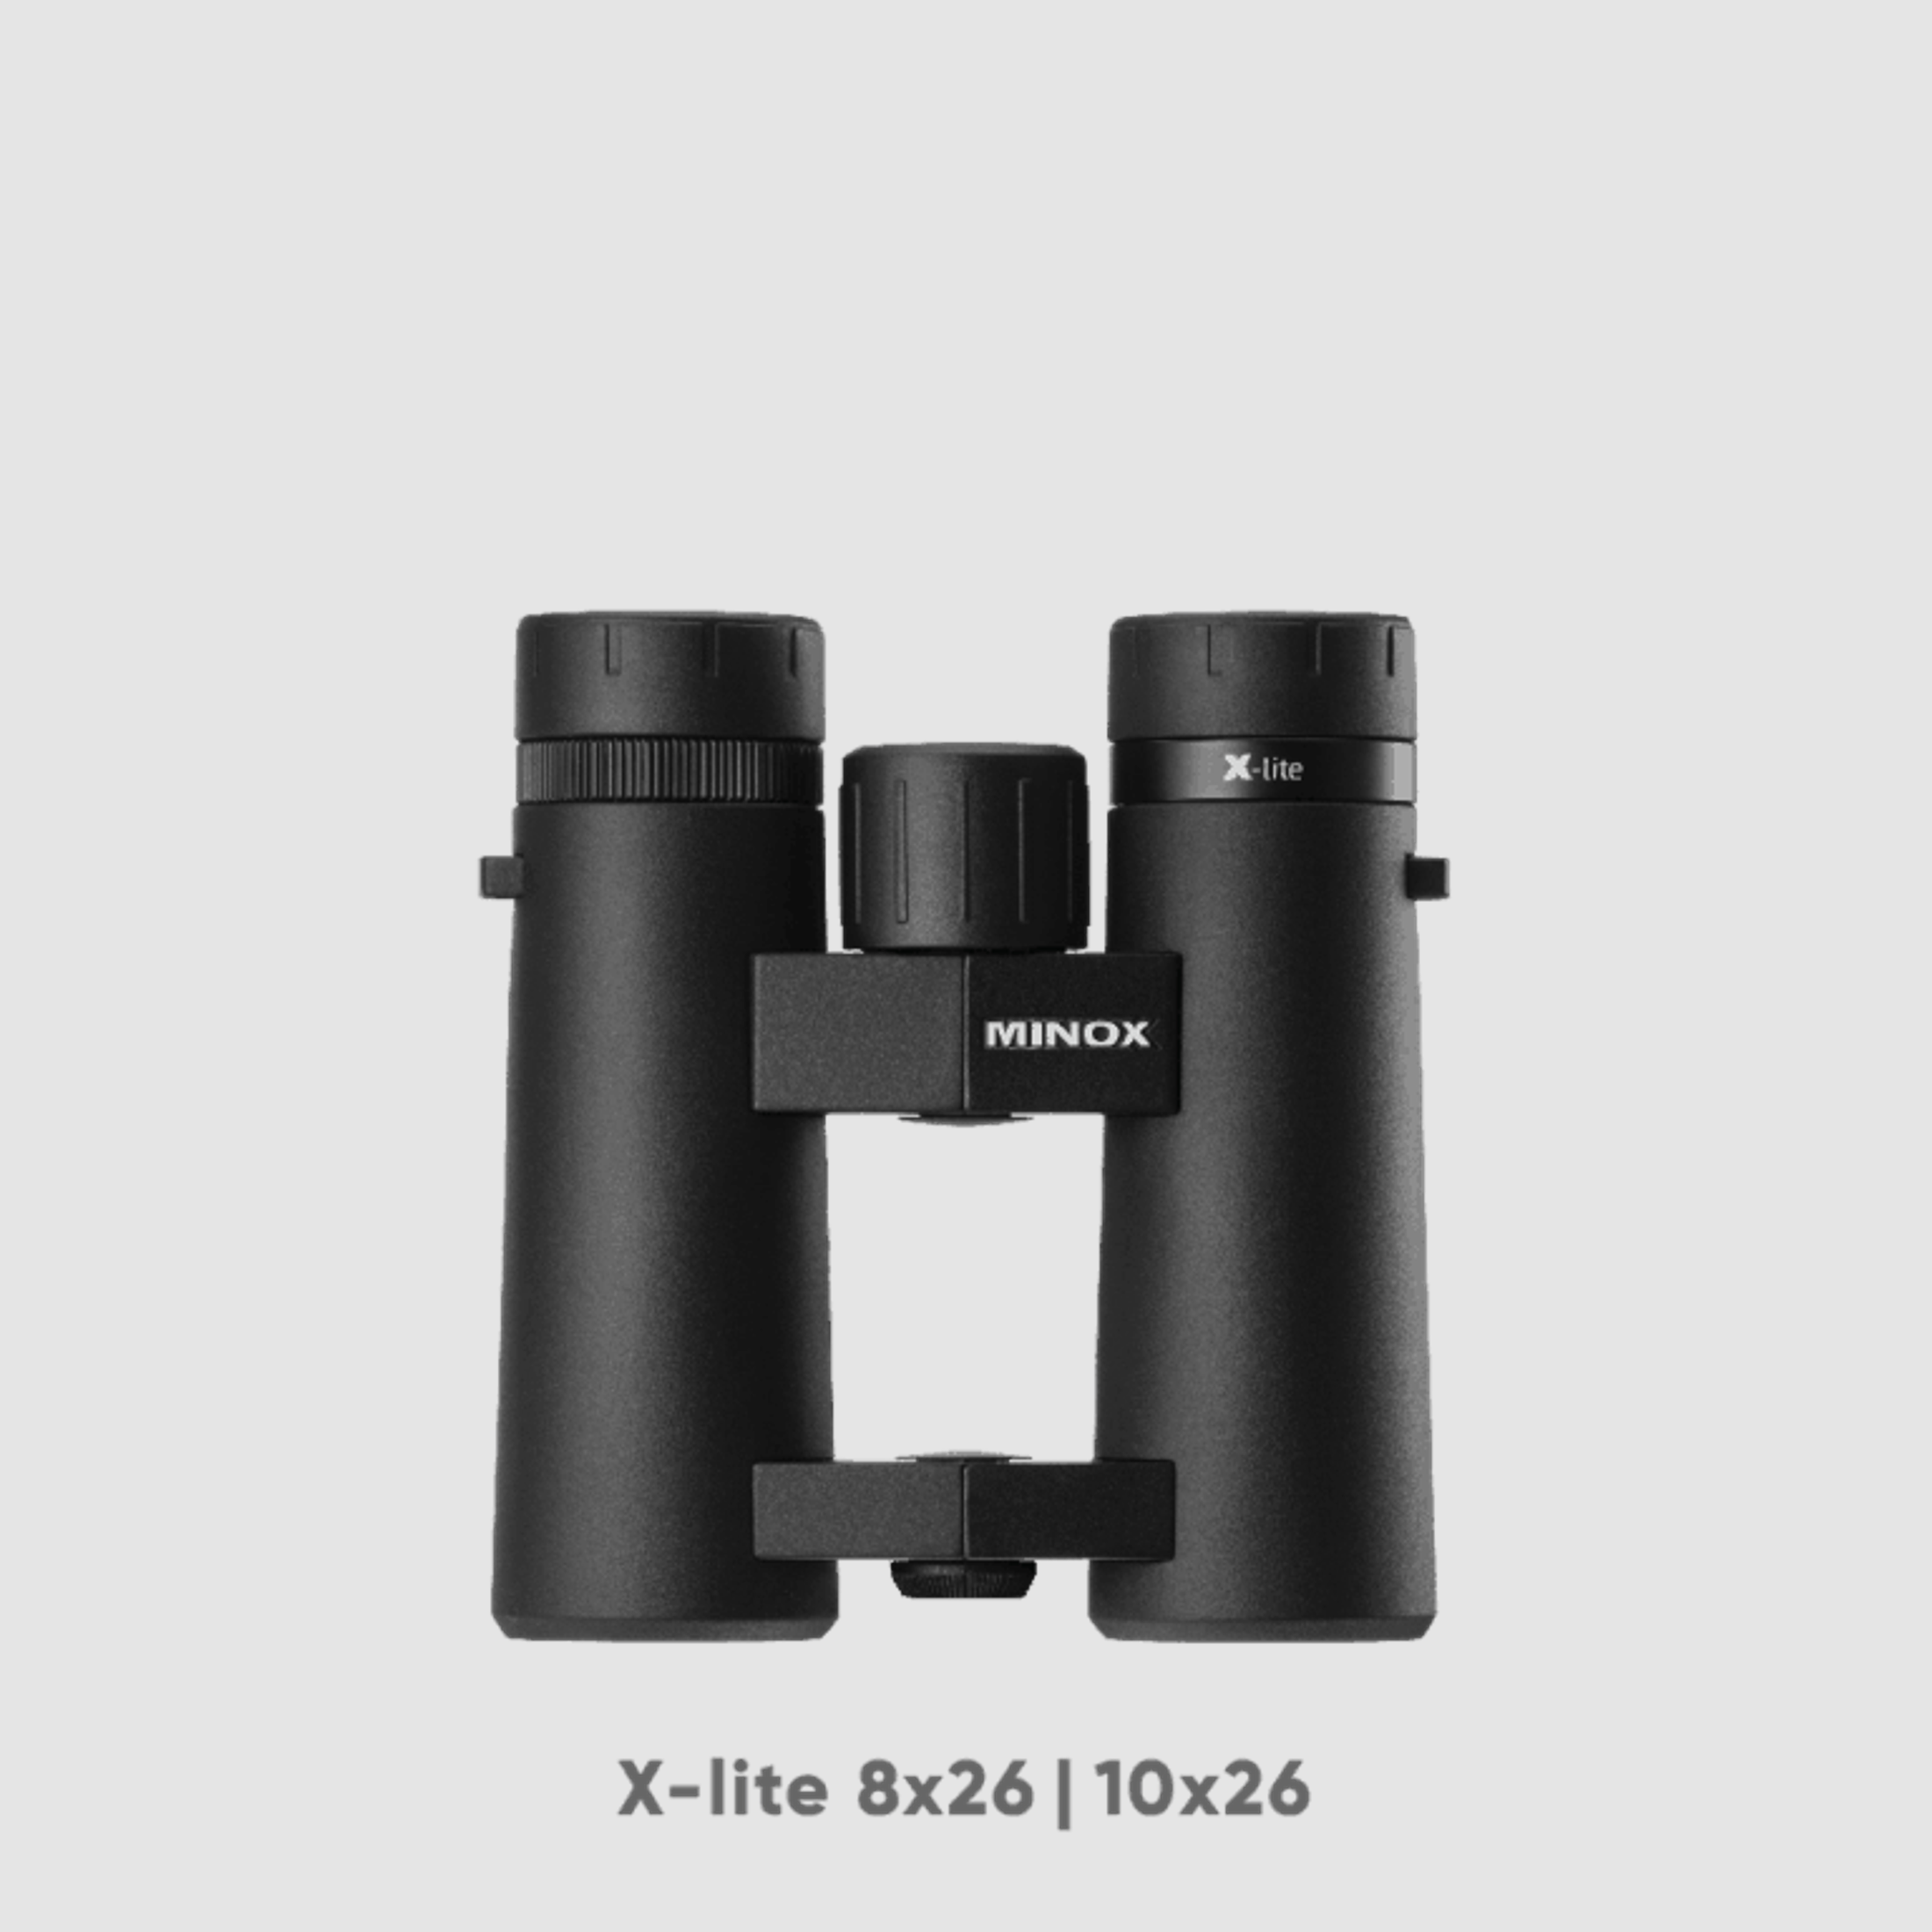 Minox X-lite 10x26 Fernglas/Jagdglas